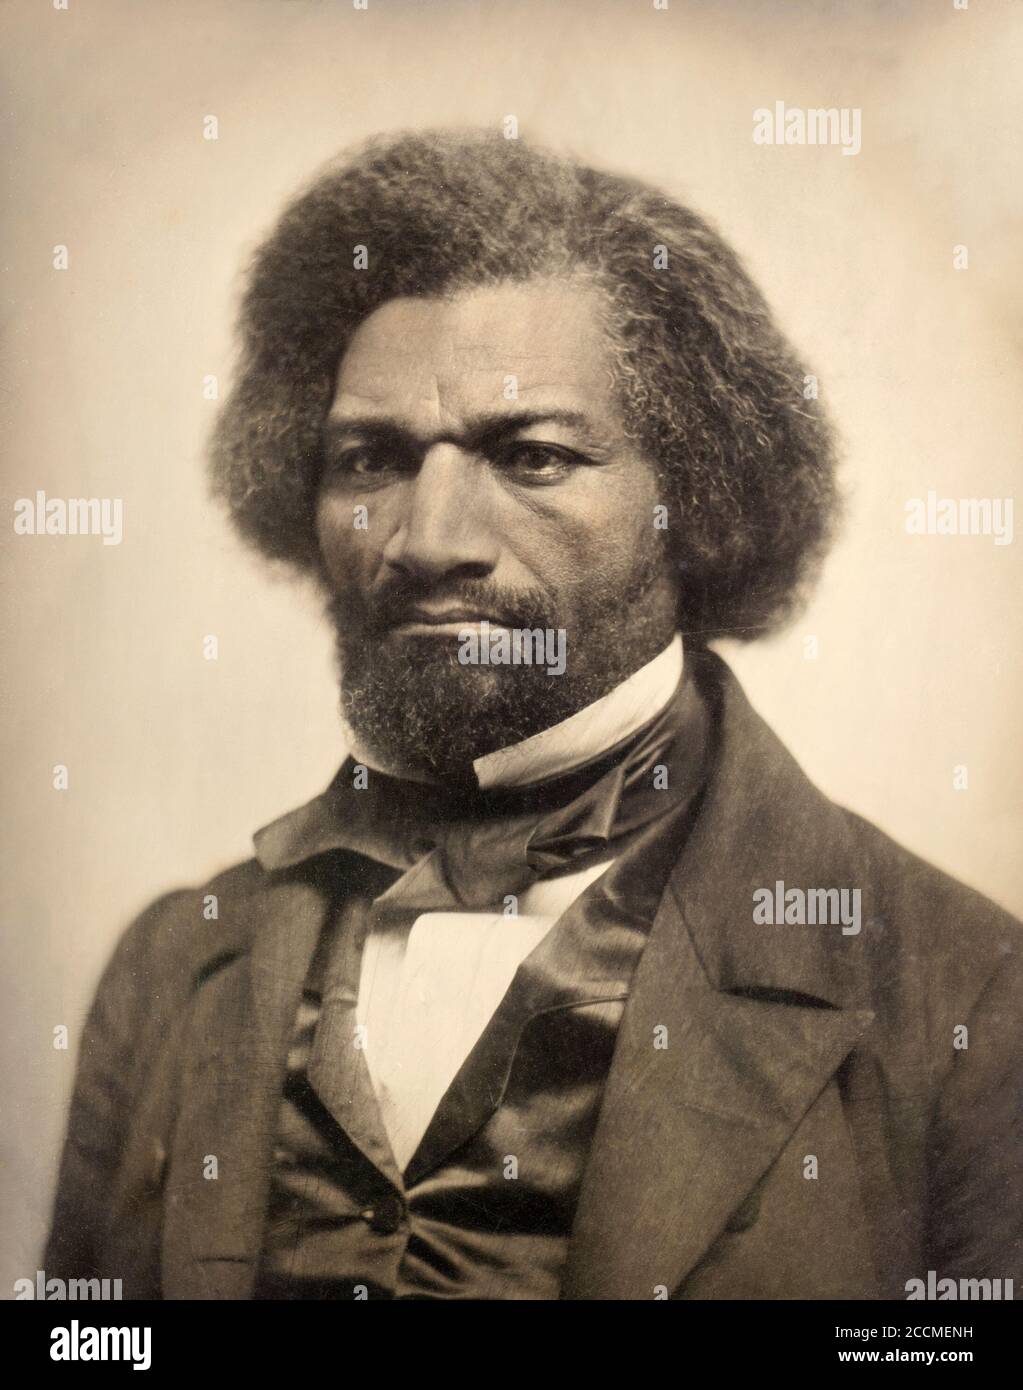 Ritratto di Federico Douglass (1818-1895), daguerrotype, 1856. Douglass, un ex schiavo, era un riformatore sociale americano, abolizionista, oratore, scrittore e statista Foto Stock